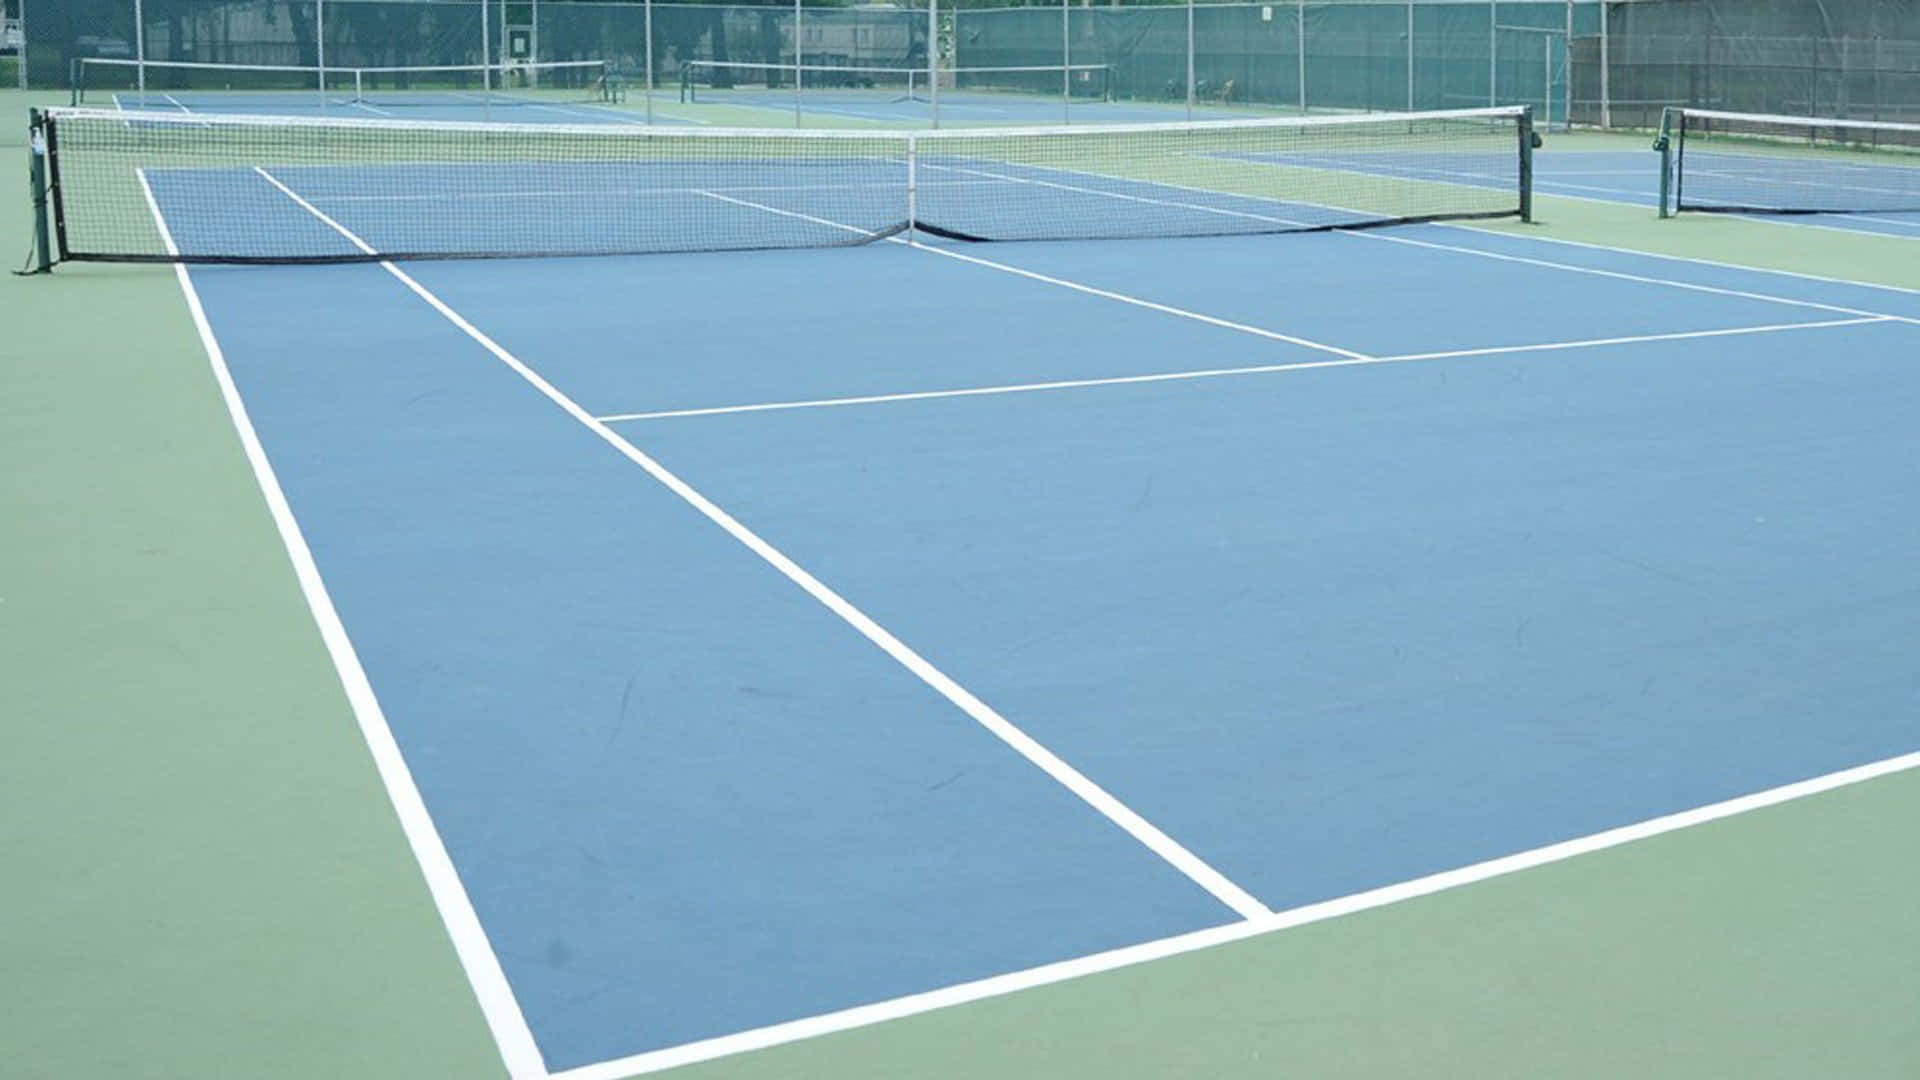 Unacancha De Tenis Con Líneas Azules Y Líneas Blancas